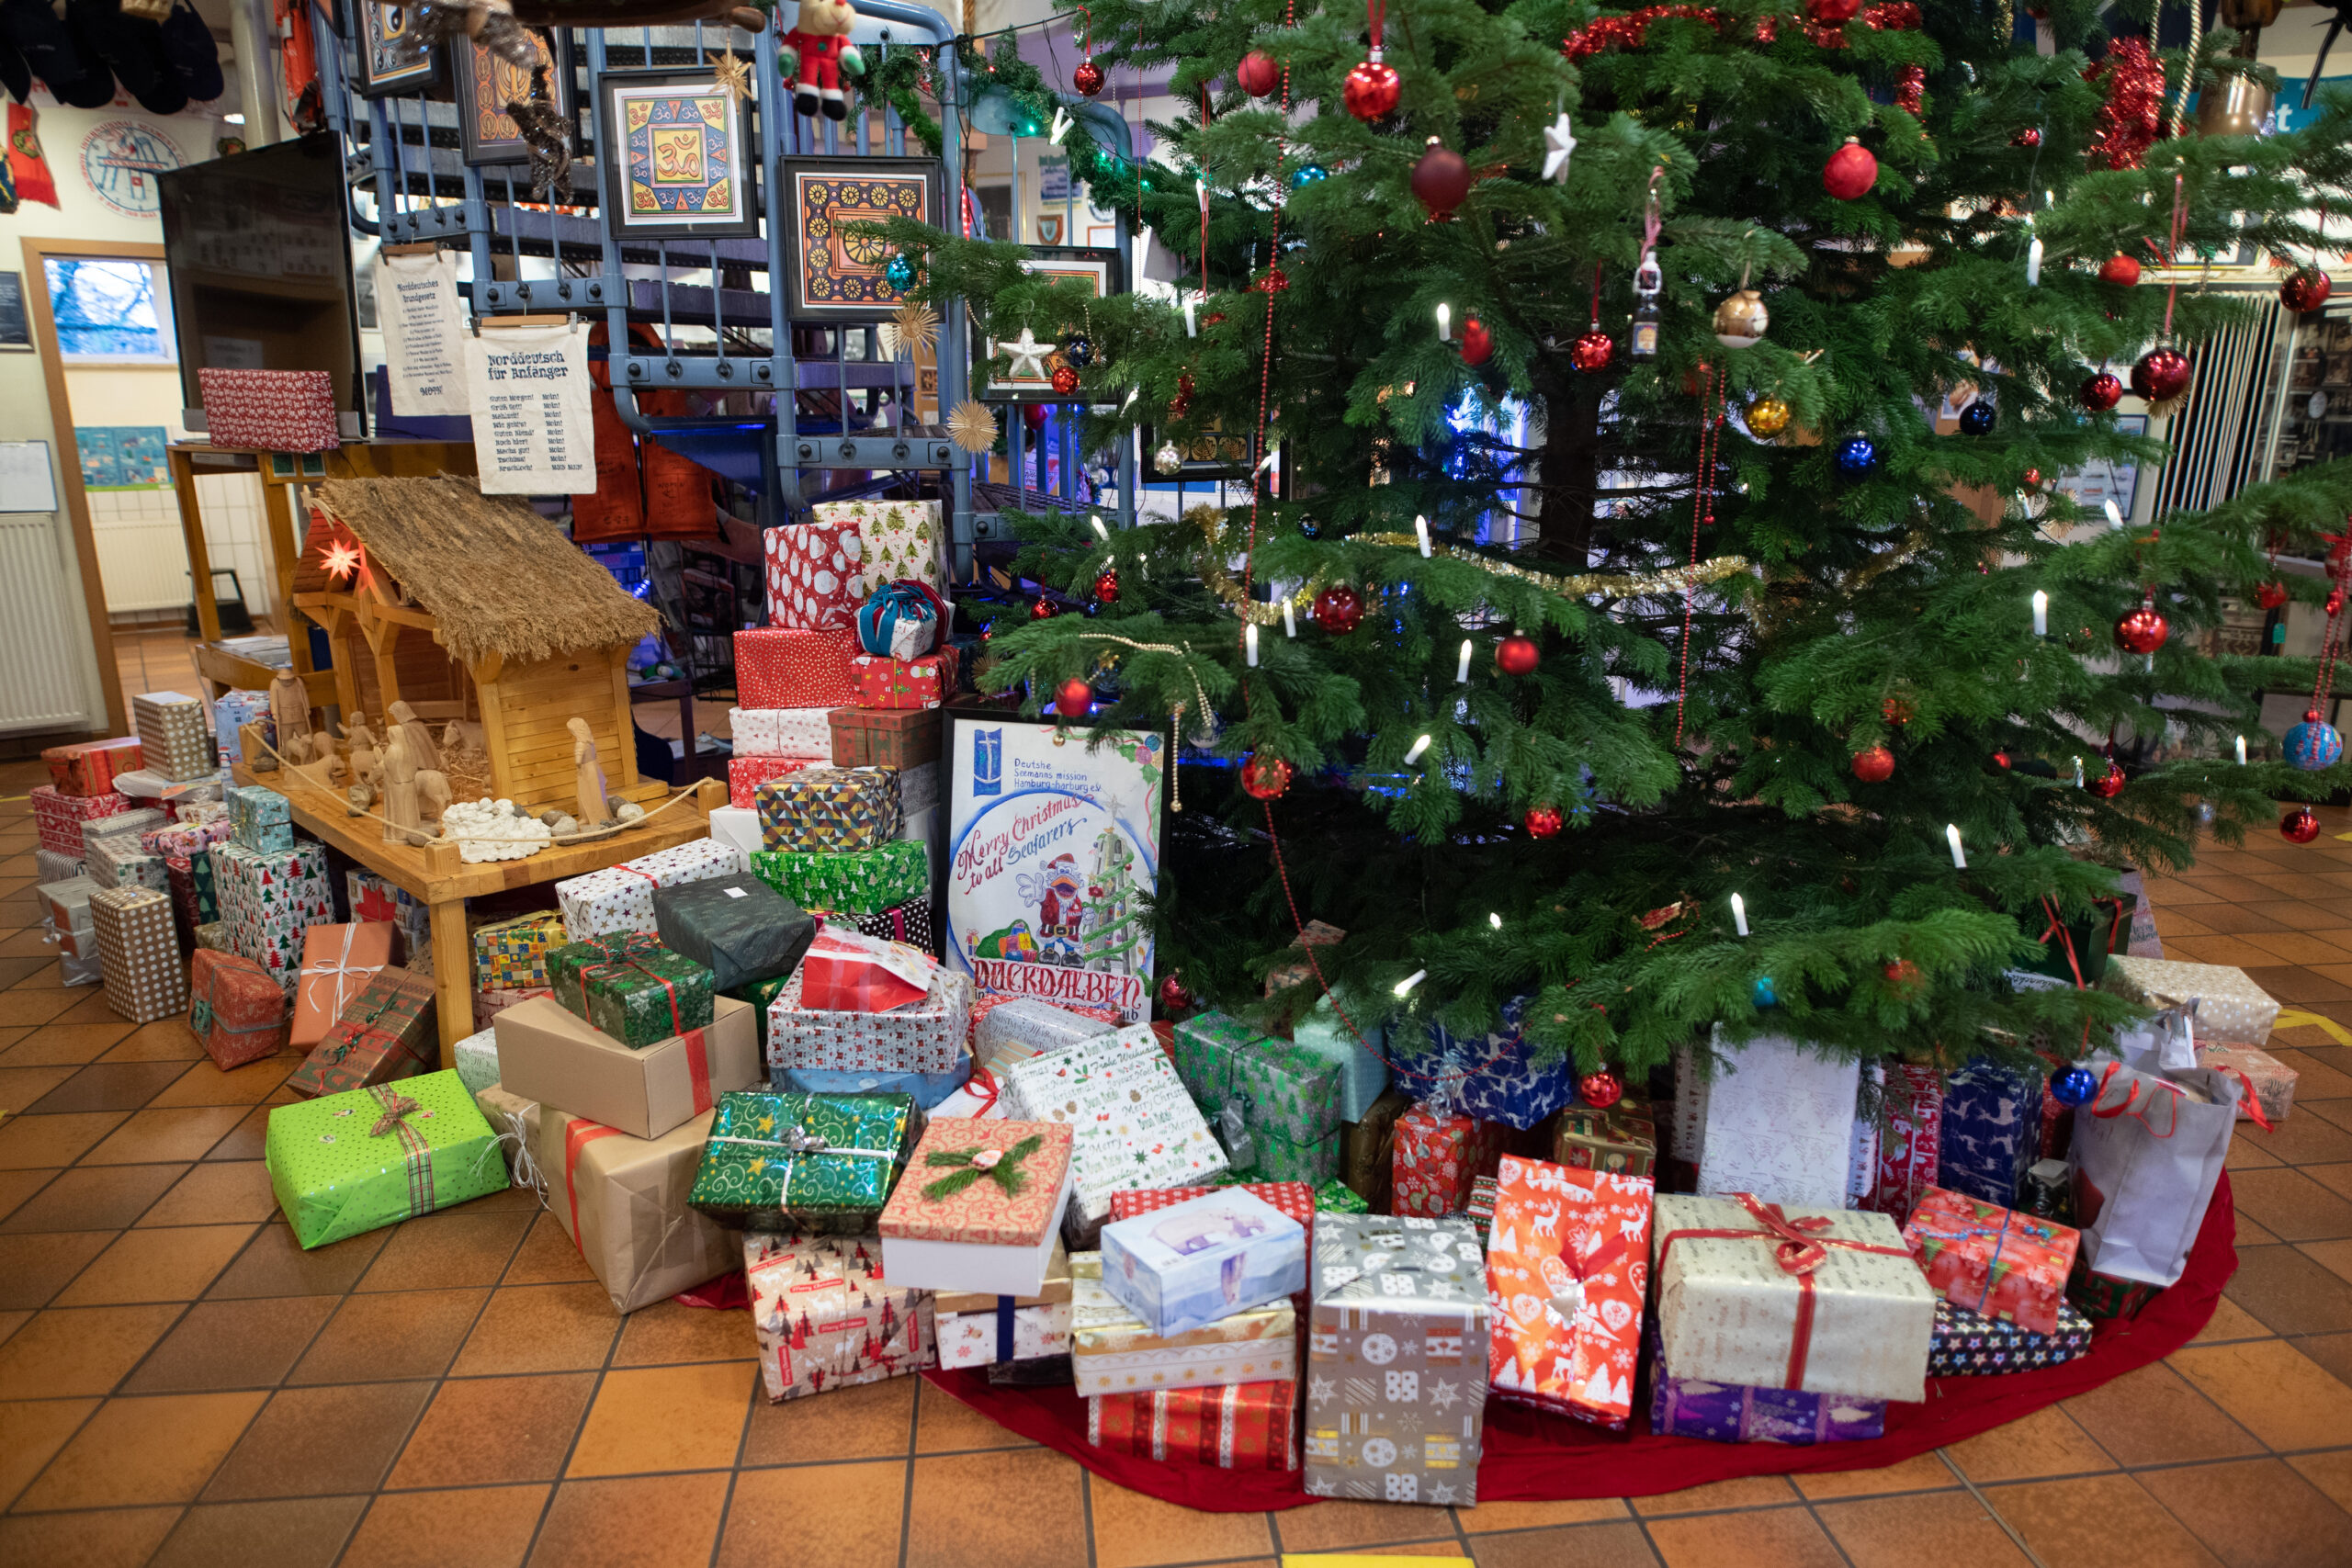 Zahlreiche Geschenke liegen im Seemannsclub "Duckdalben" unter einem Weihnachtsbaum. (Archivbild)